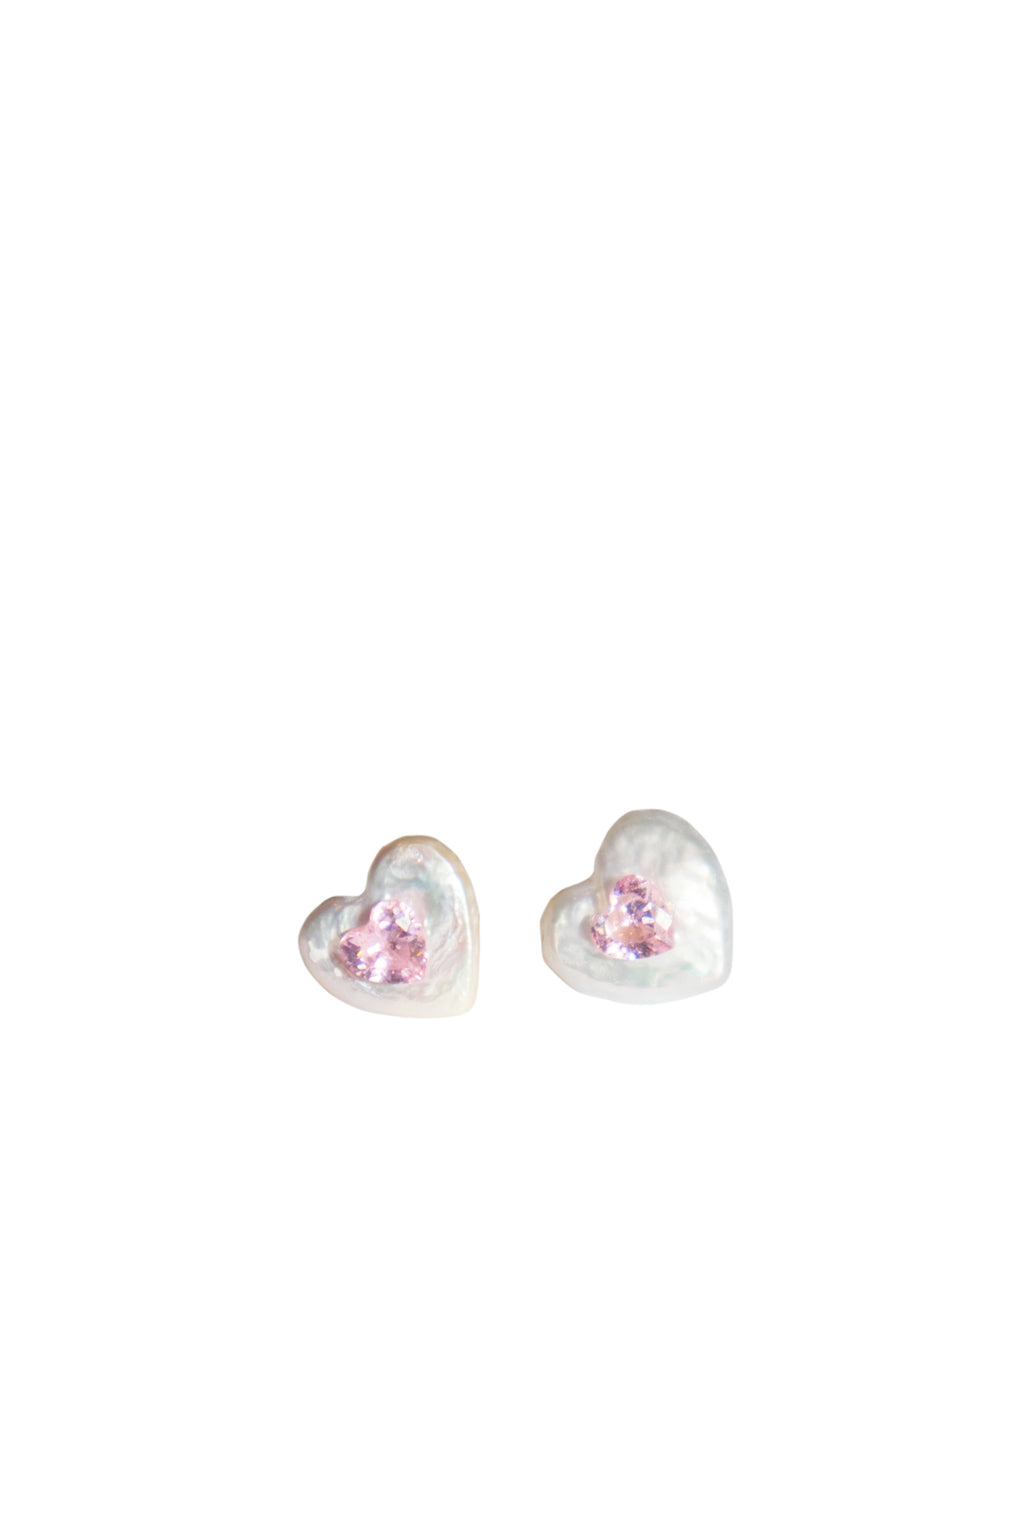 Elizabeth-heart-shaped-baroque-pearl-earrings